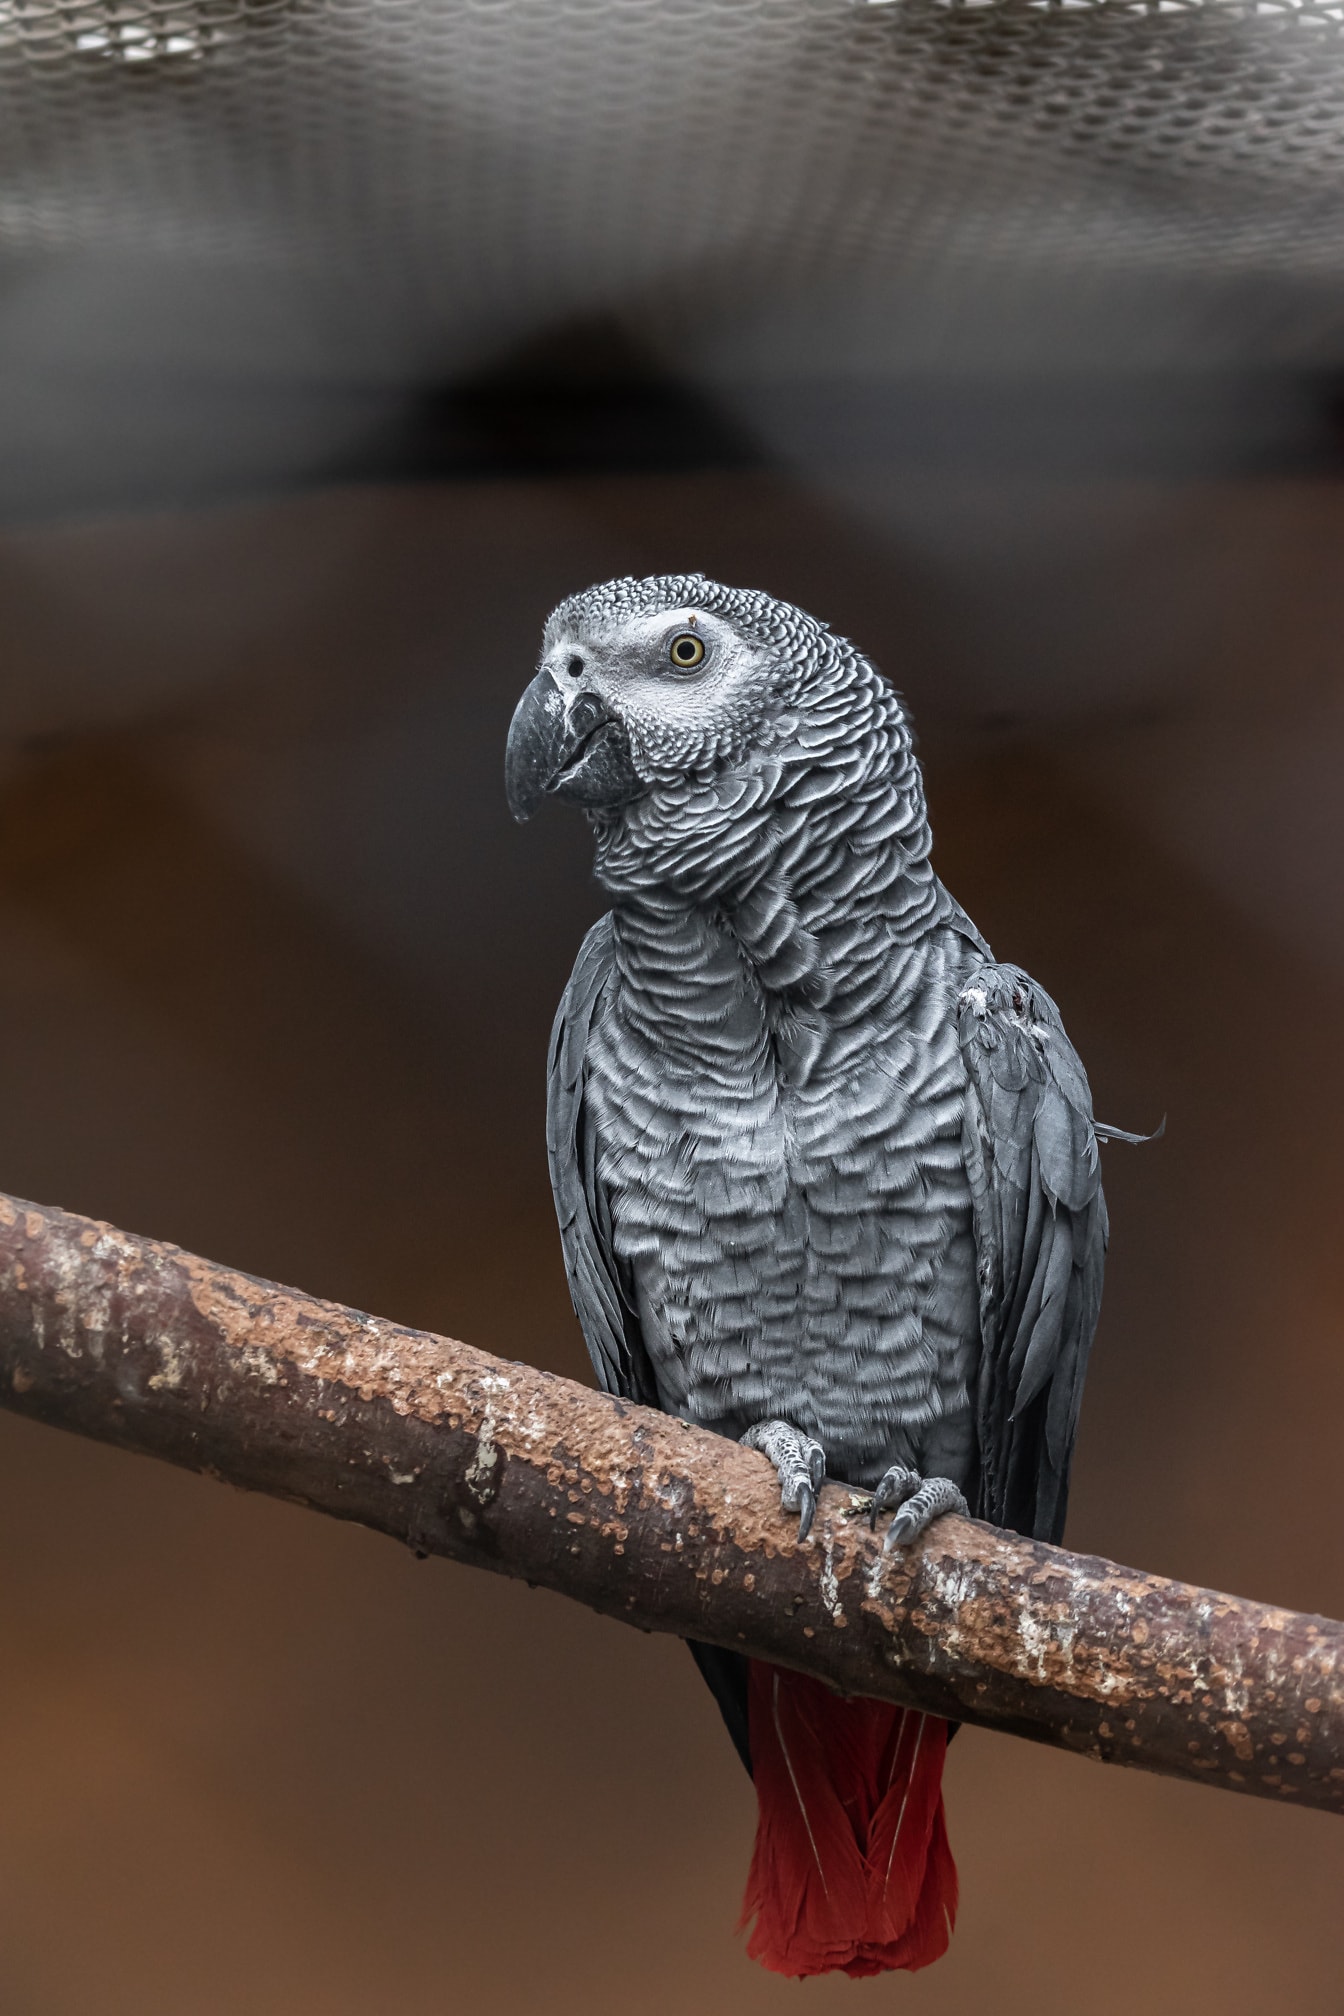 アフリカの灰色のオウム (Psittacus erithacus) 鳥は、ケージの小枝に座っている